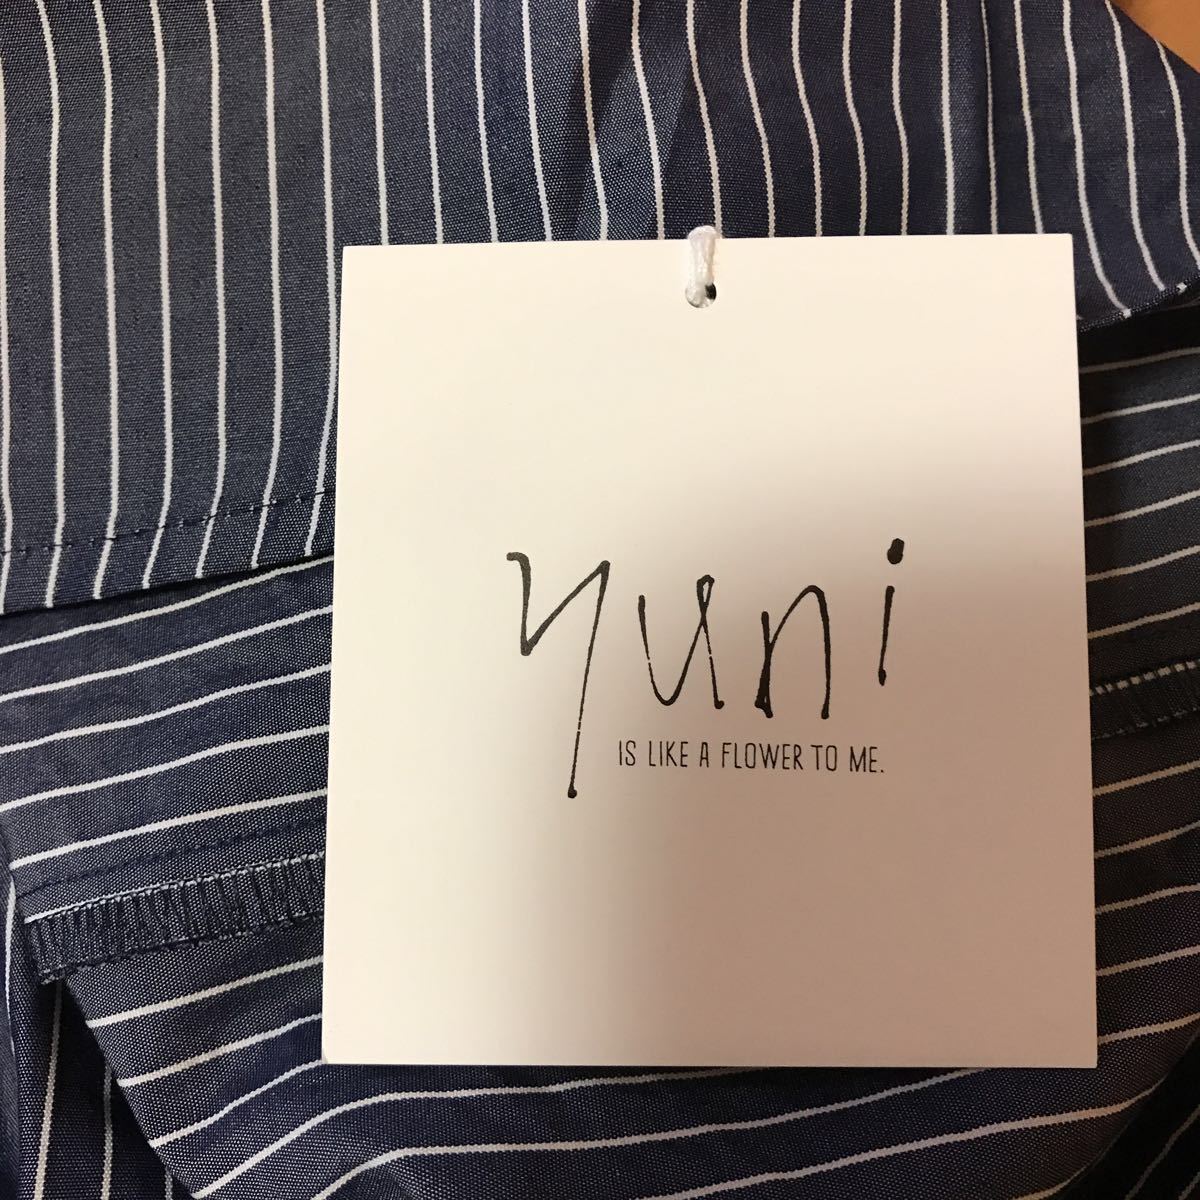 yuni條紋變形一件 原文:yuni ストライプ変形ワンピース